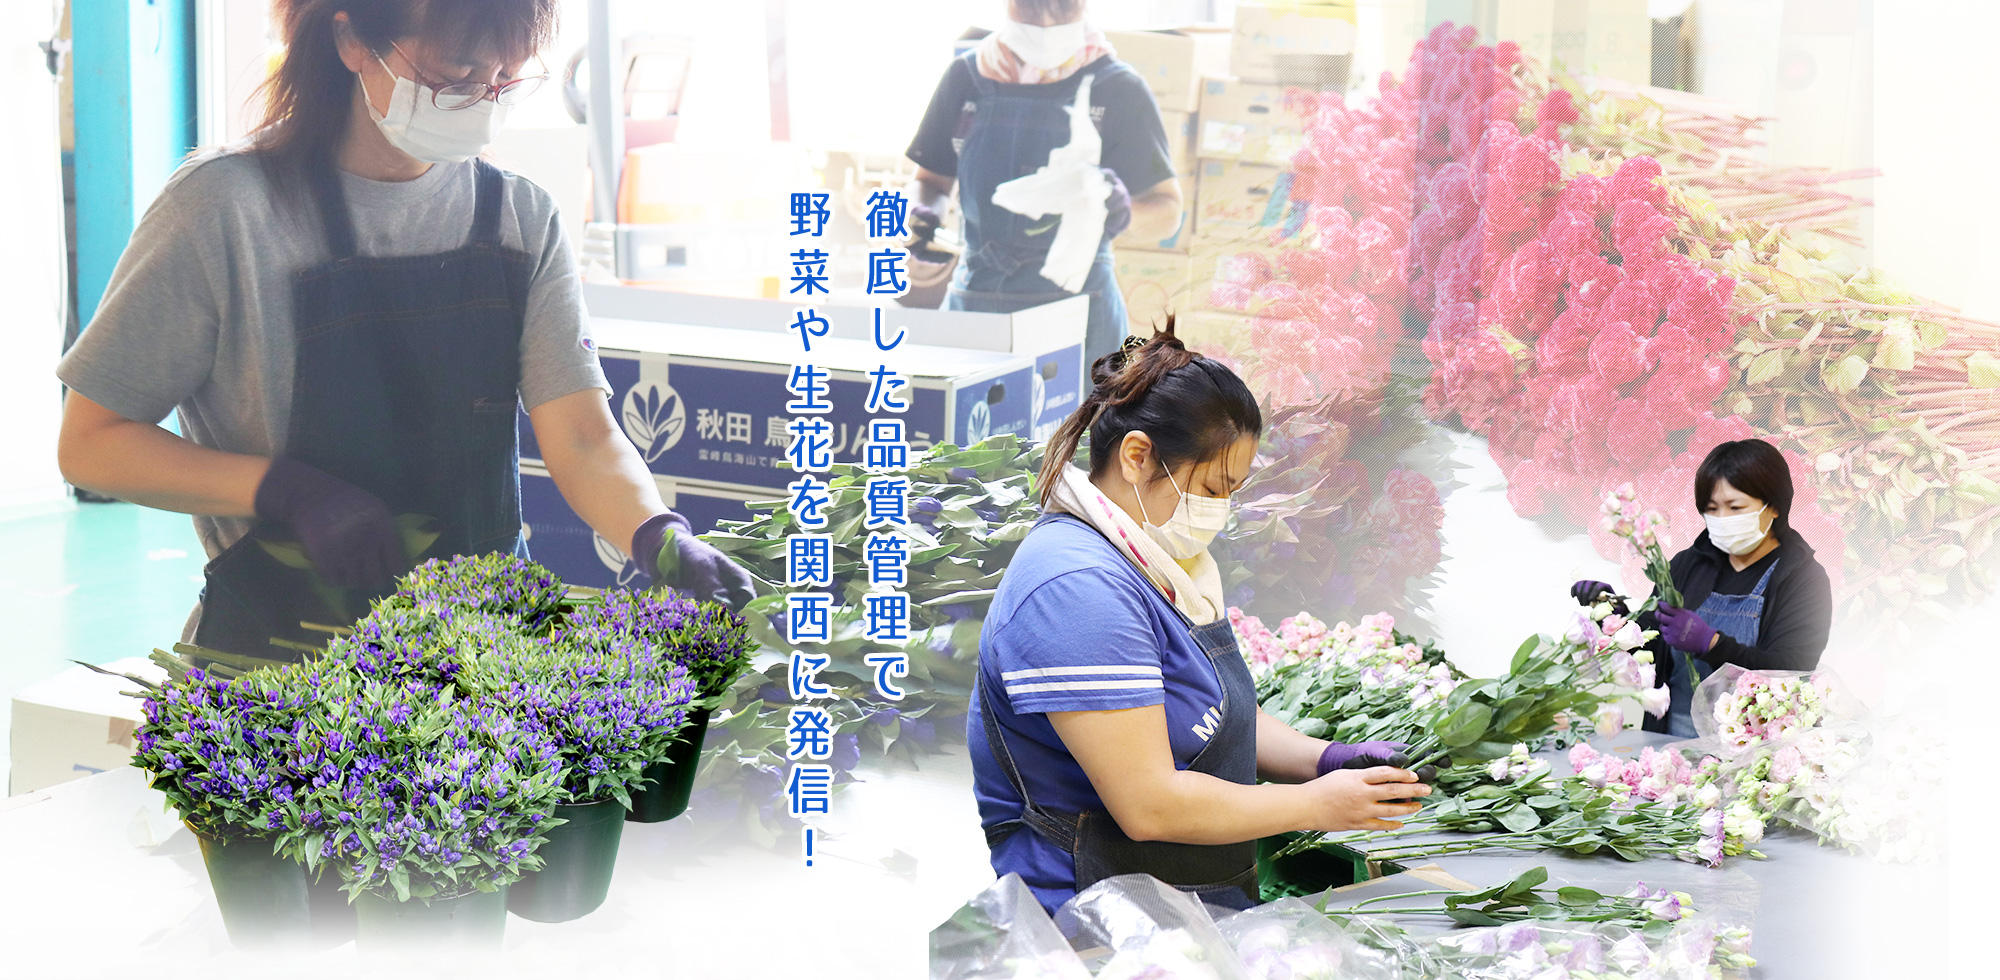 徹底した品質管理で野菜や生花を関西に発信！